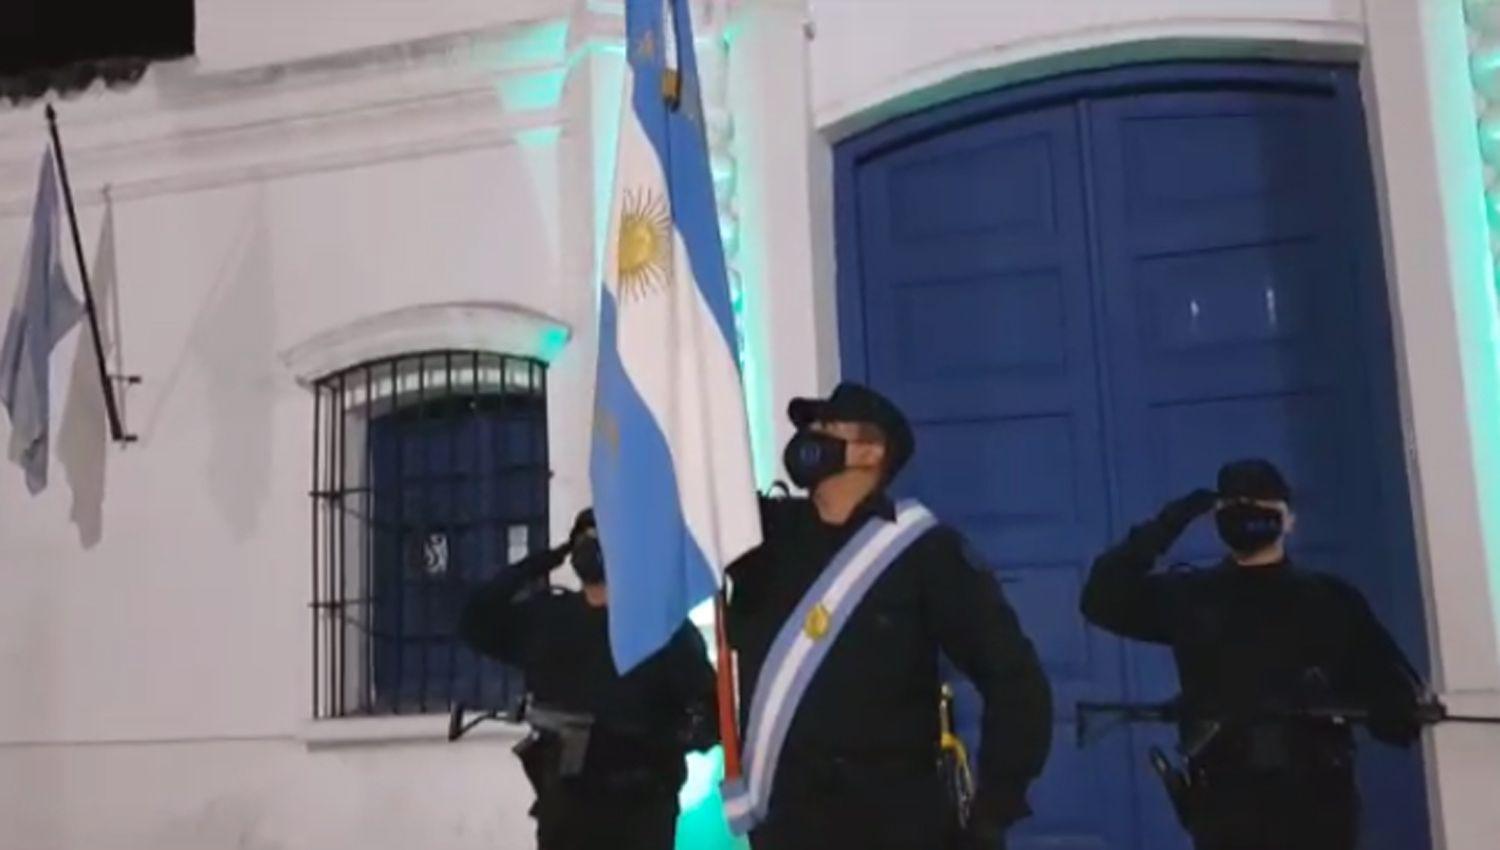 VIDEO  Efectivos policiales y un sentido homenaje en el Diacutea de la Independencia Argentina